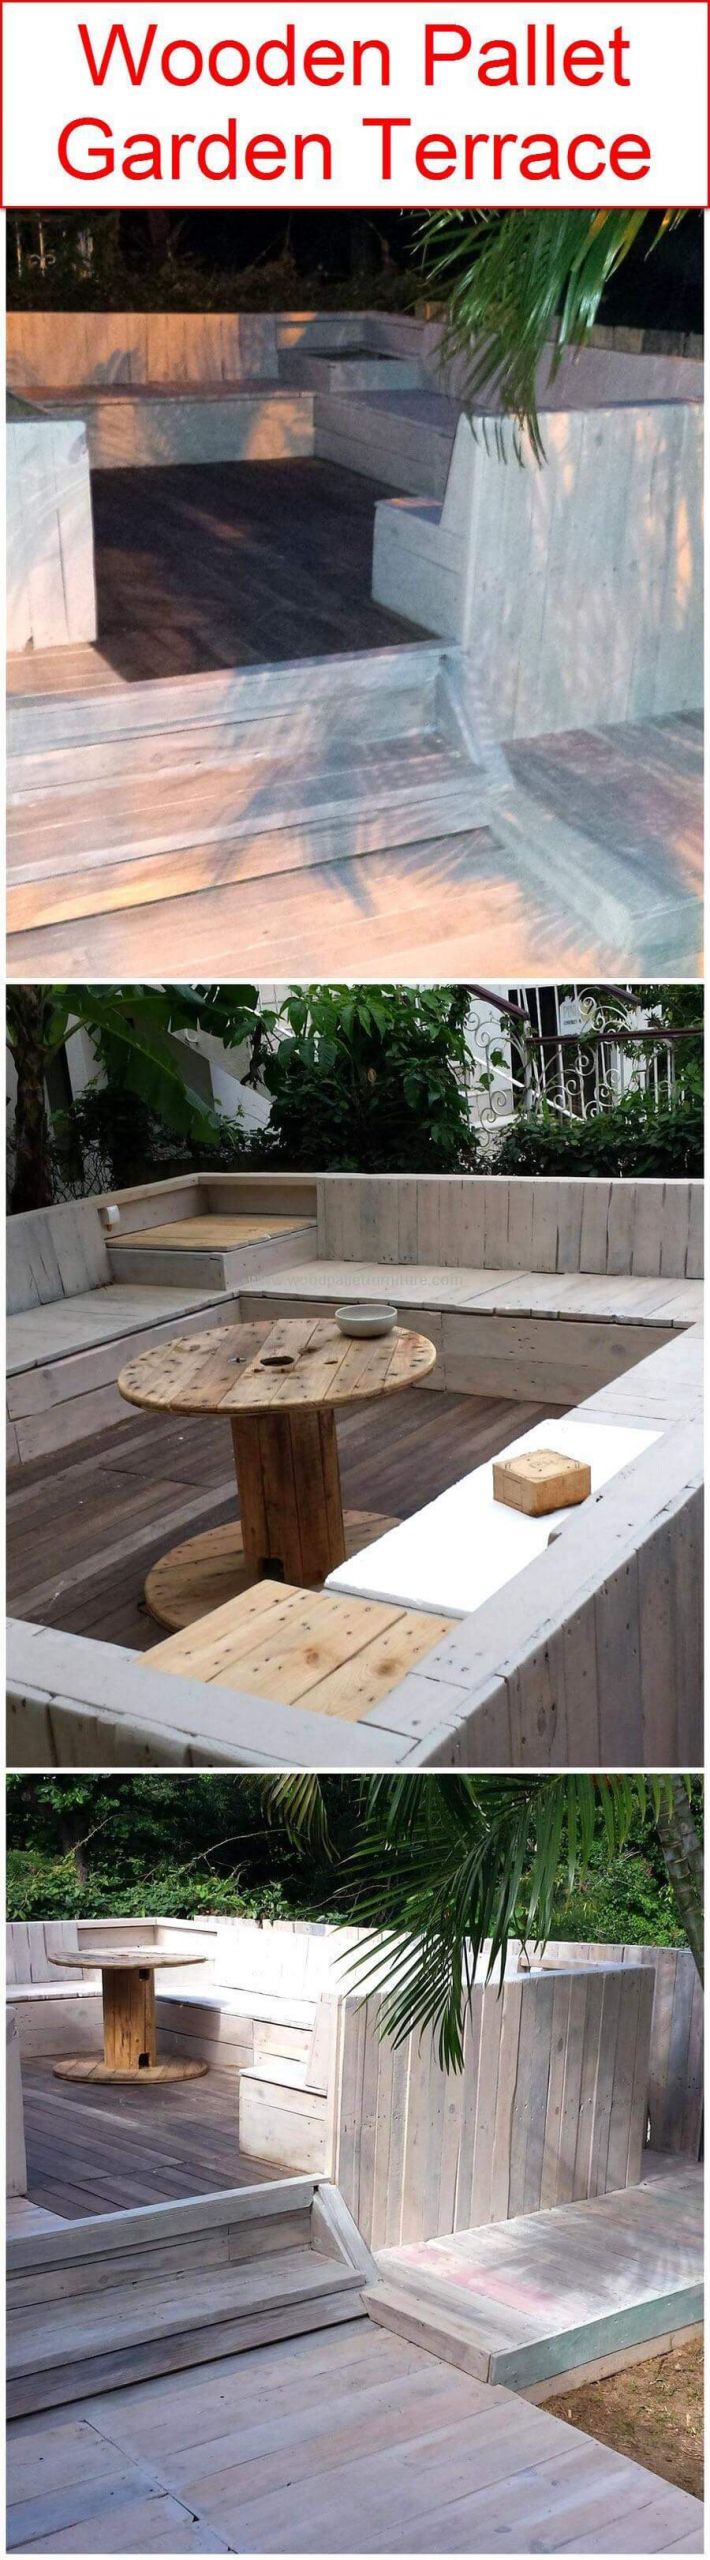 Terrace Landscape Wood
 60 DIY Ideas For Wood Pallet Garden Terrace